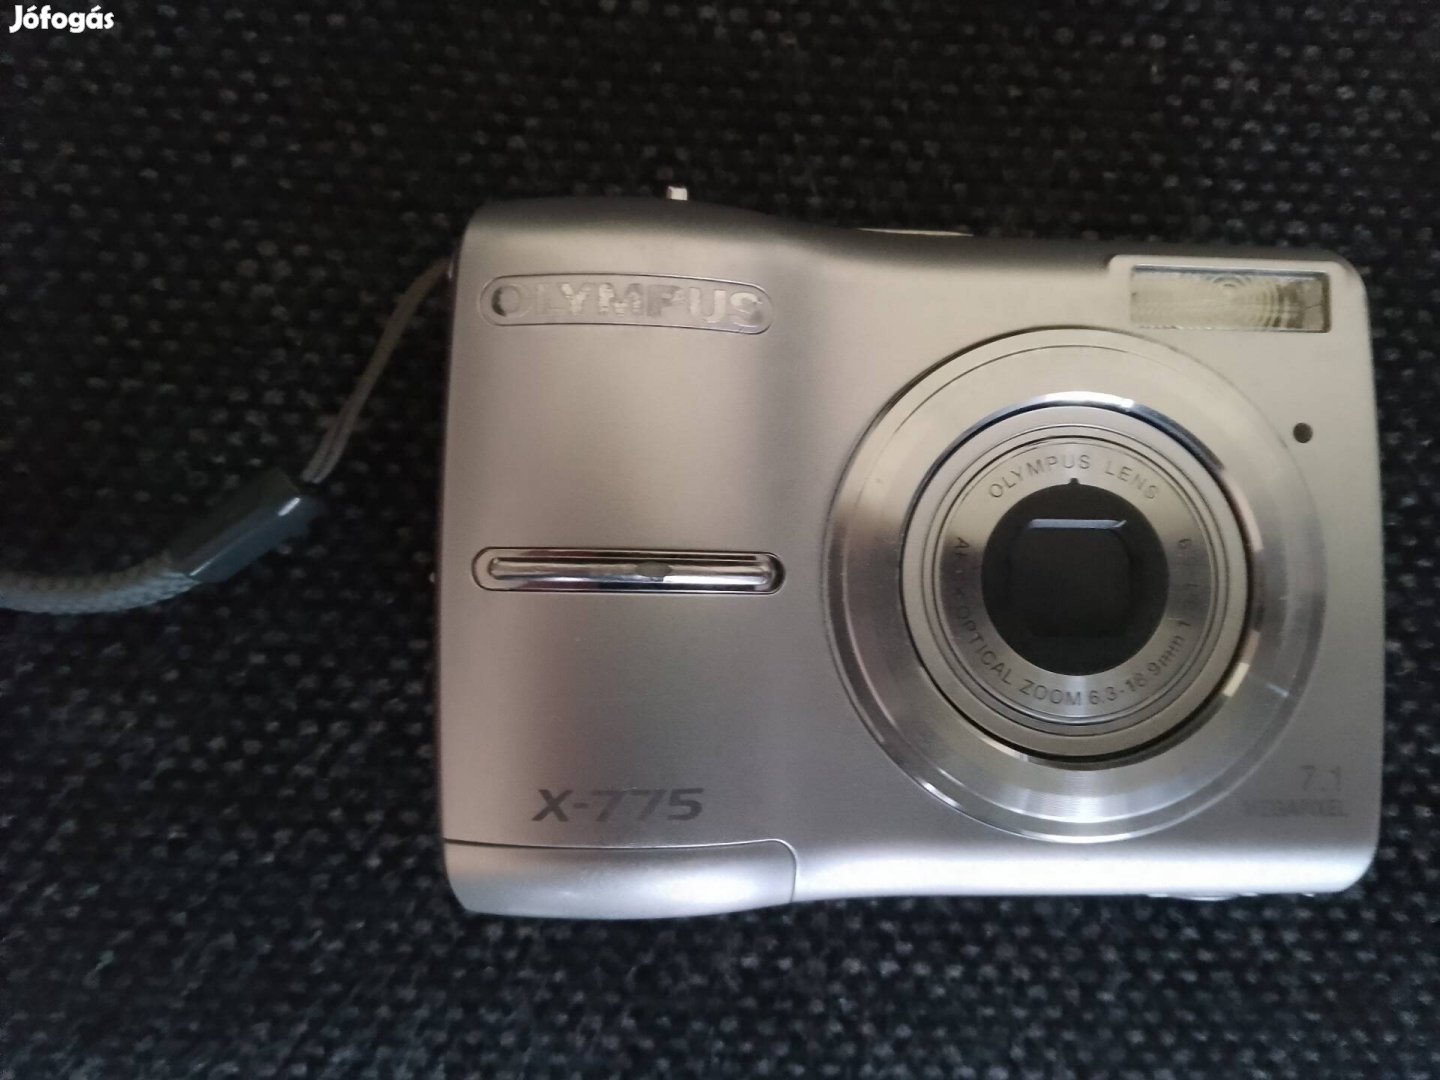 Olympus digitális fényképezőgép x-775